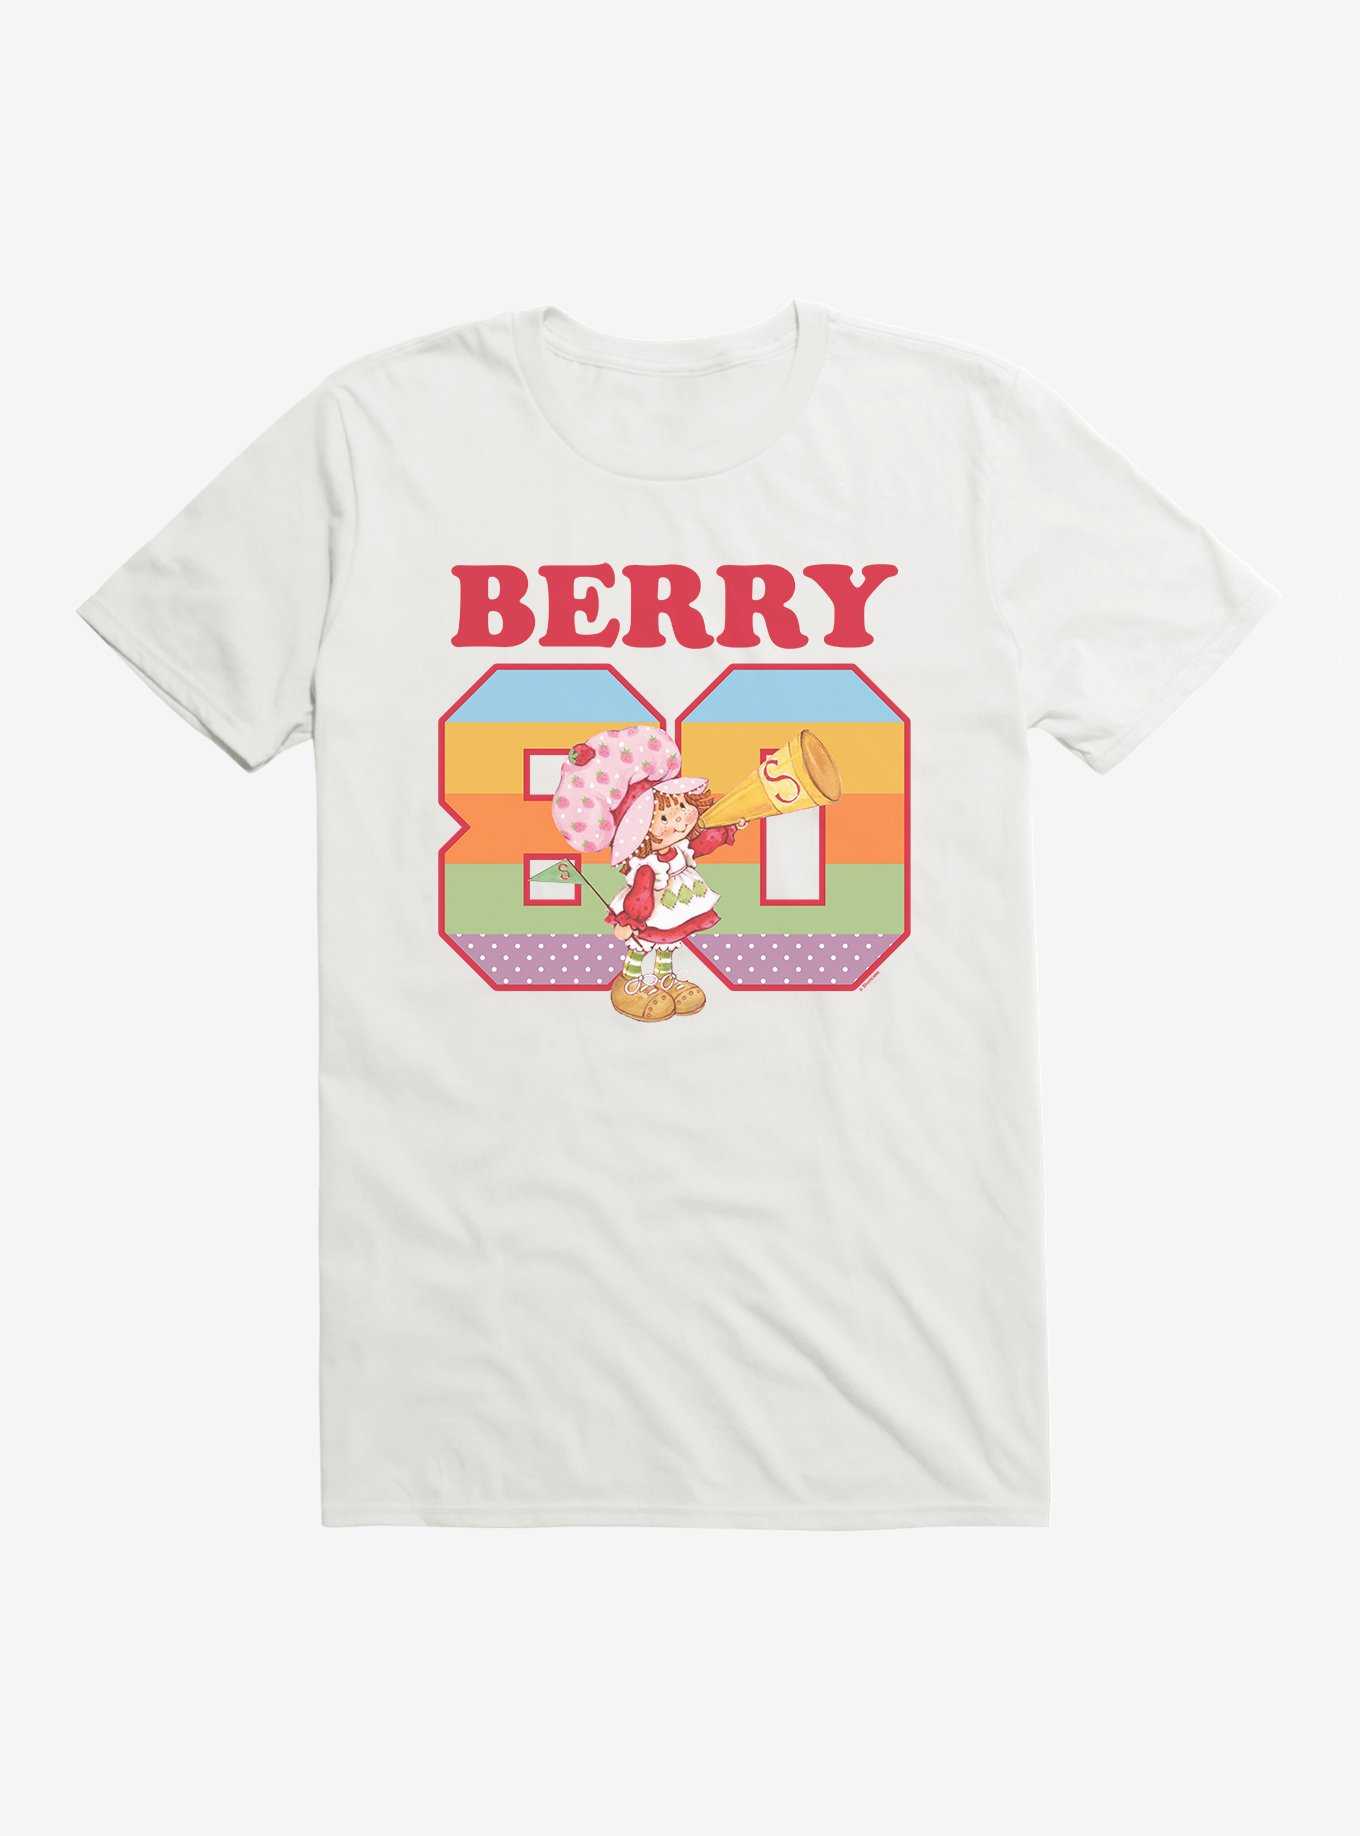 Strawberry Shortcake Berry 80 Retro T-Shirt, , hi-res